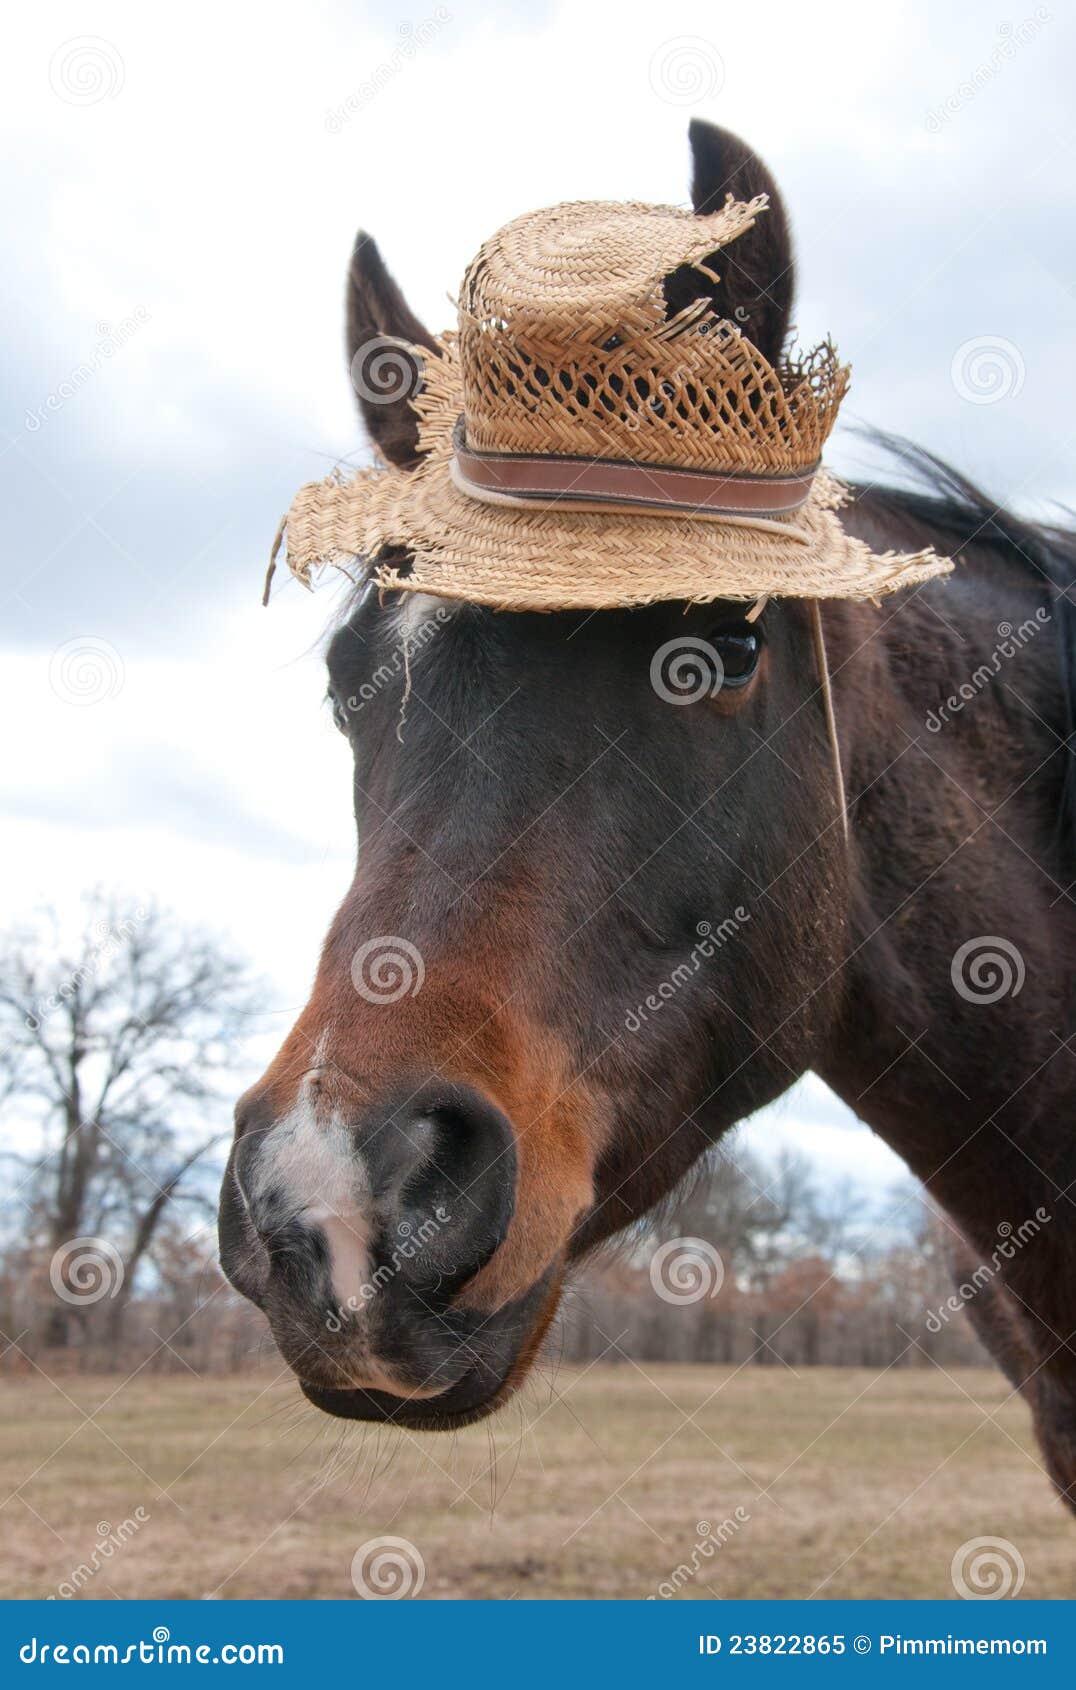 cute little arabian horse wearing hat 23822865